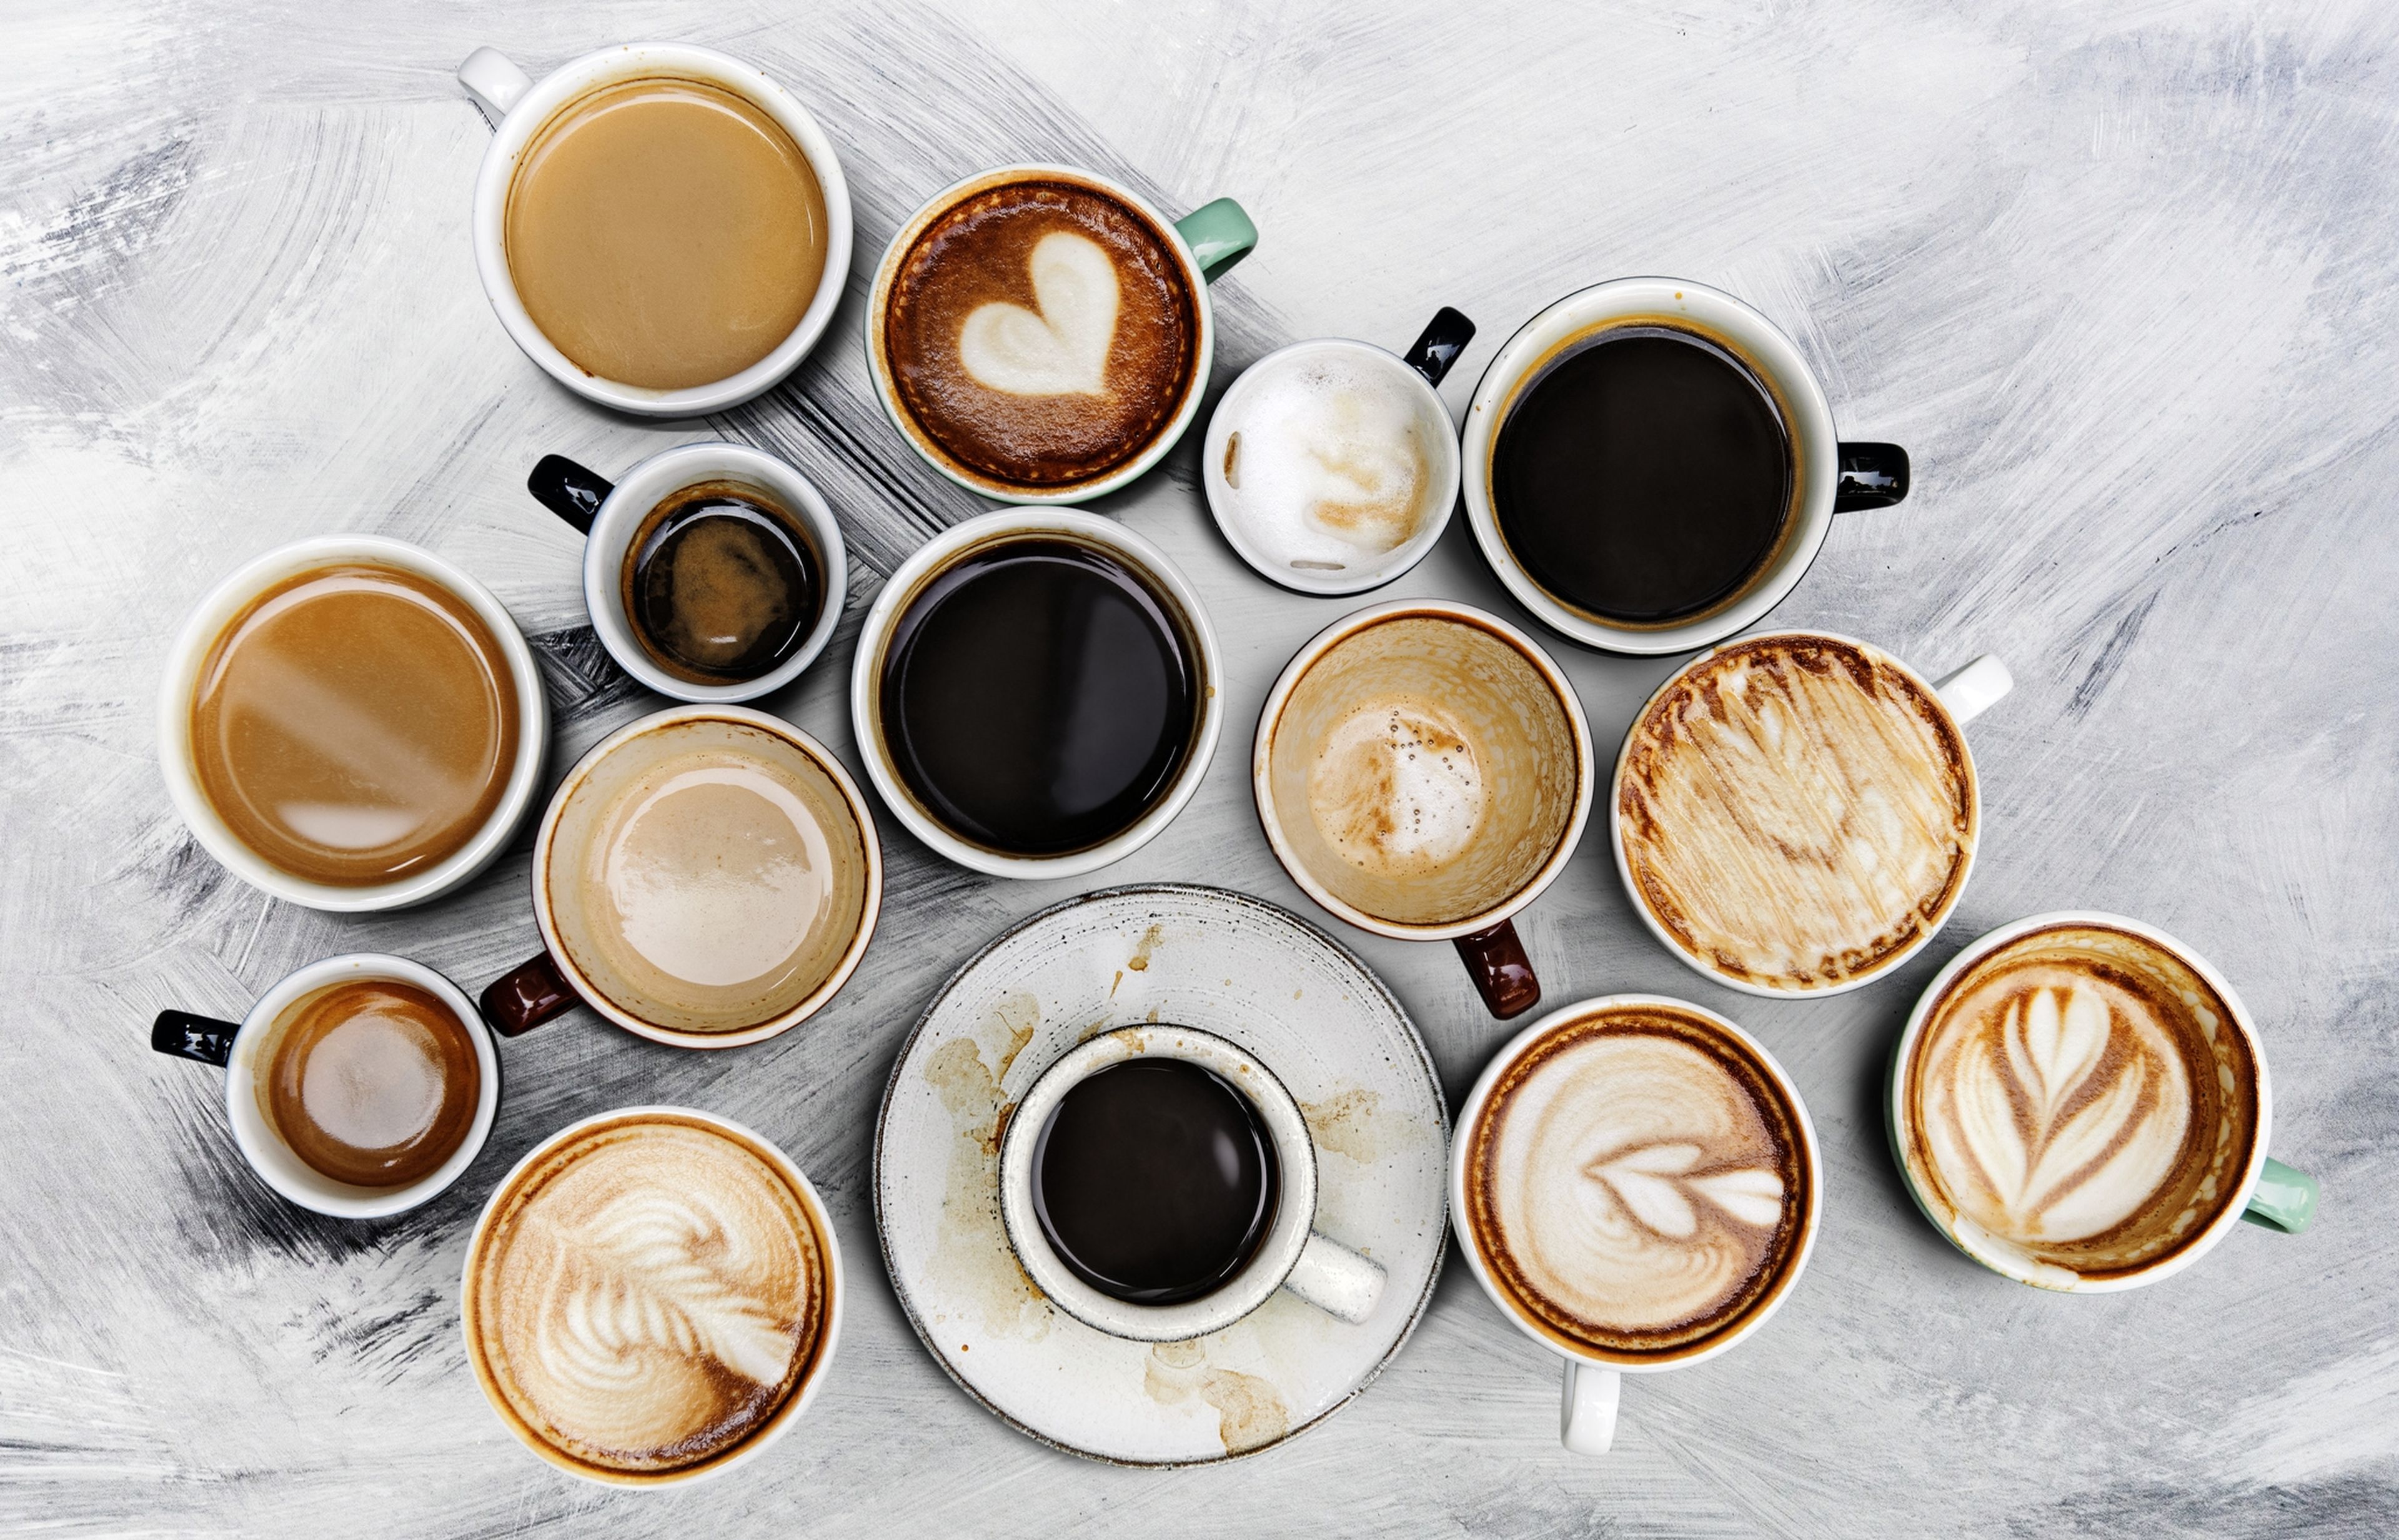 El espresso y el café de cafetera no es lo mismo: uno sube más el colesterol